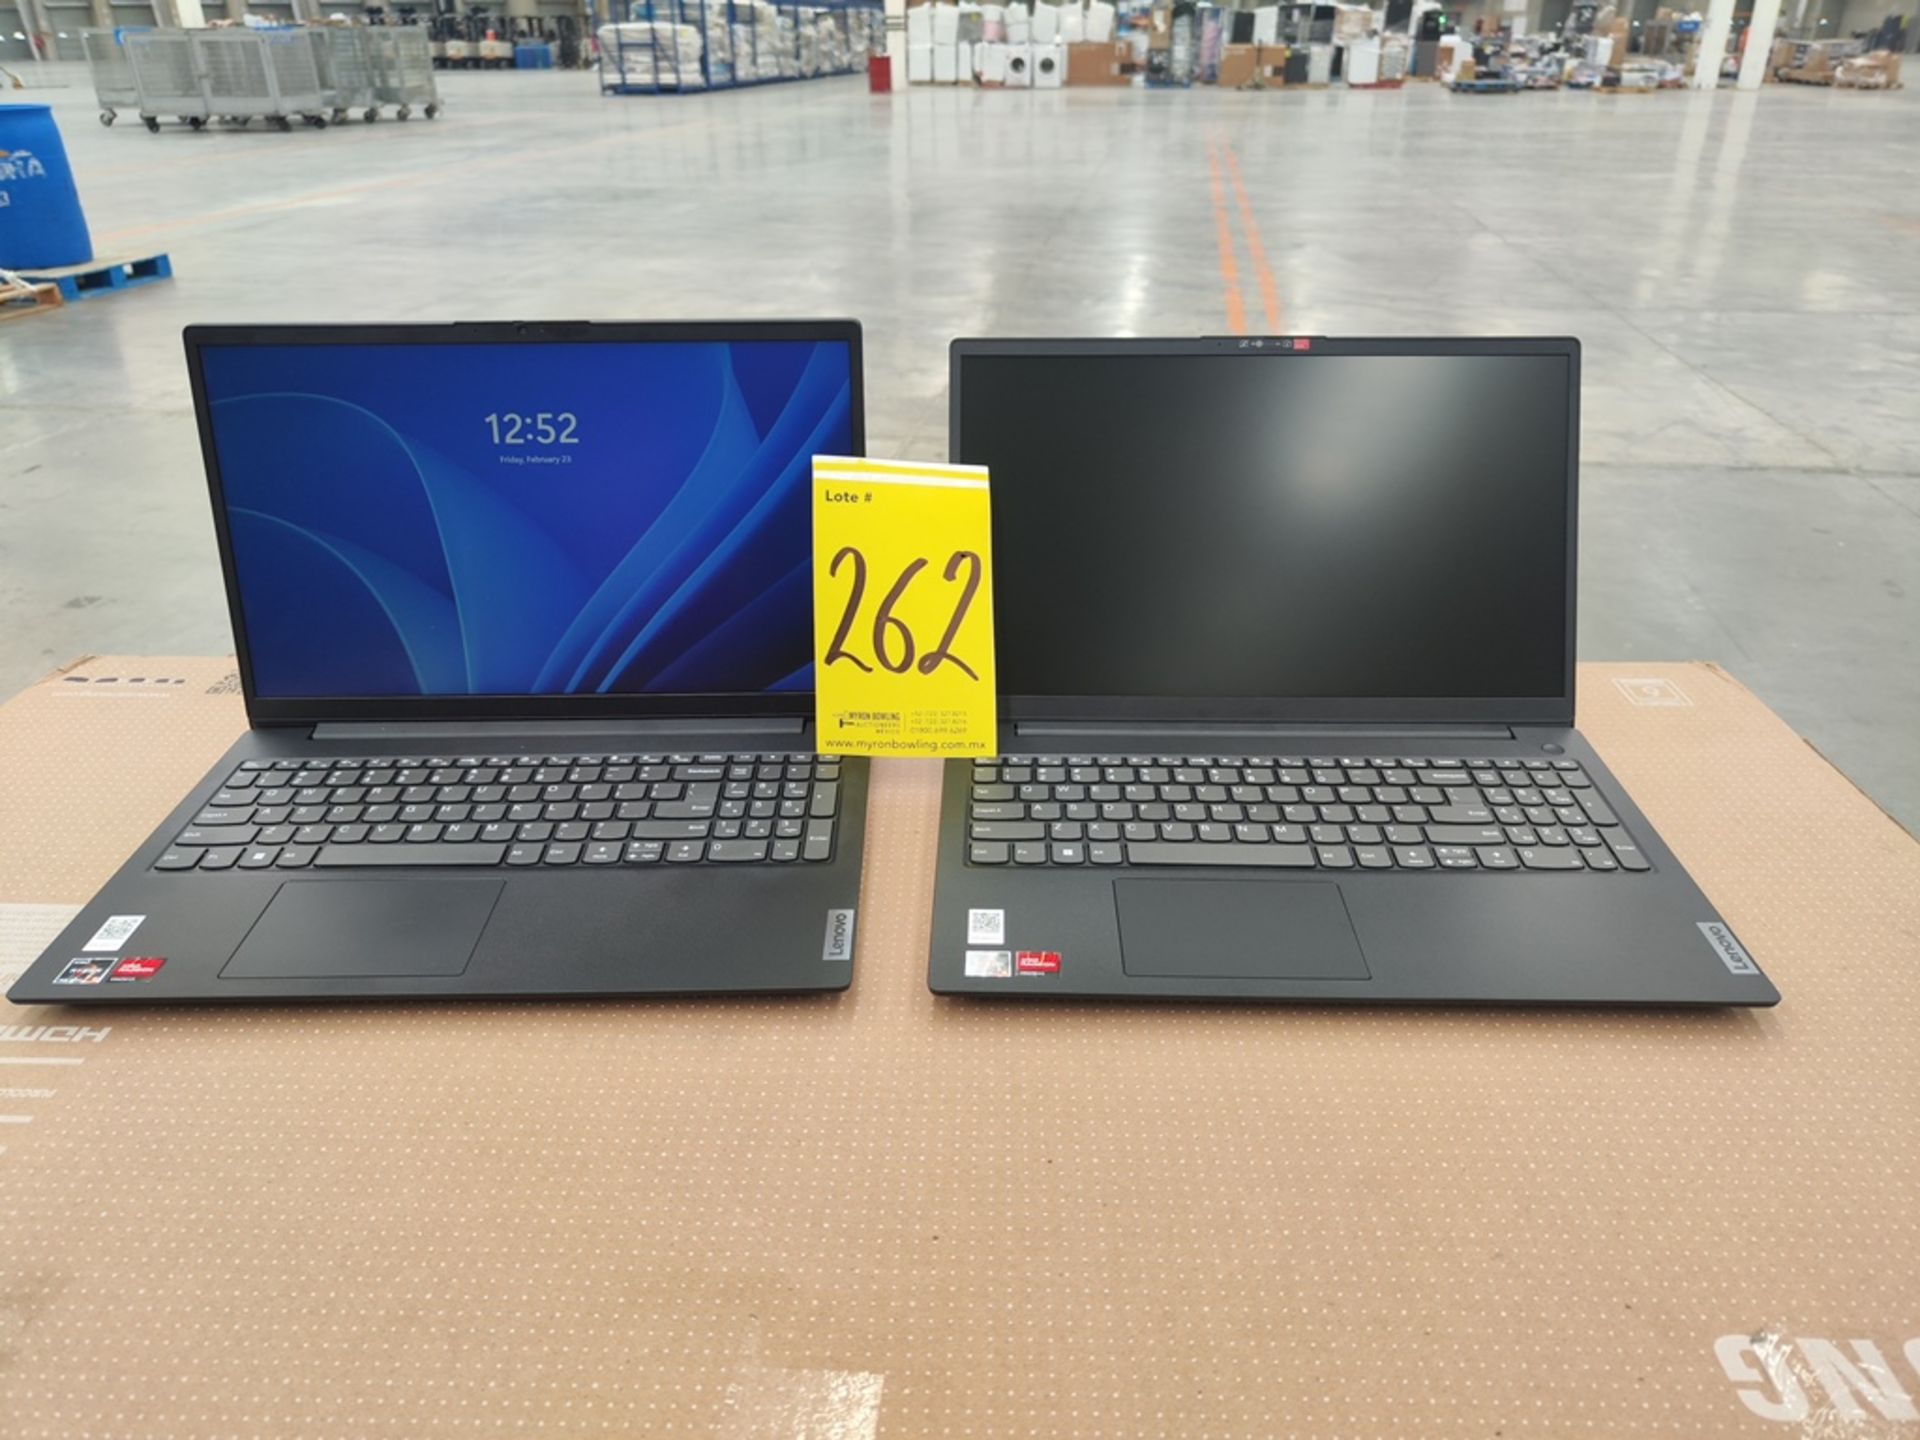 Lote de 2 laptops contiene: 1 laptop Marca LENOVO, Modelo 83CR000FUS, almacenamiento de 512 GB; 16